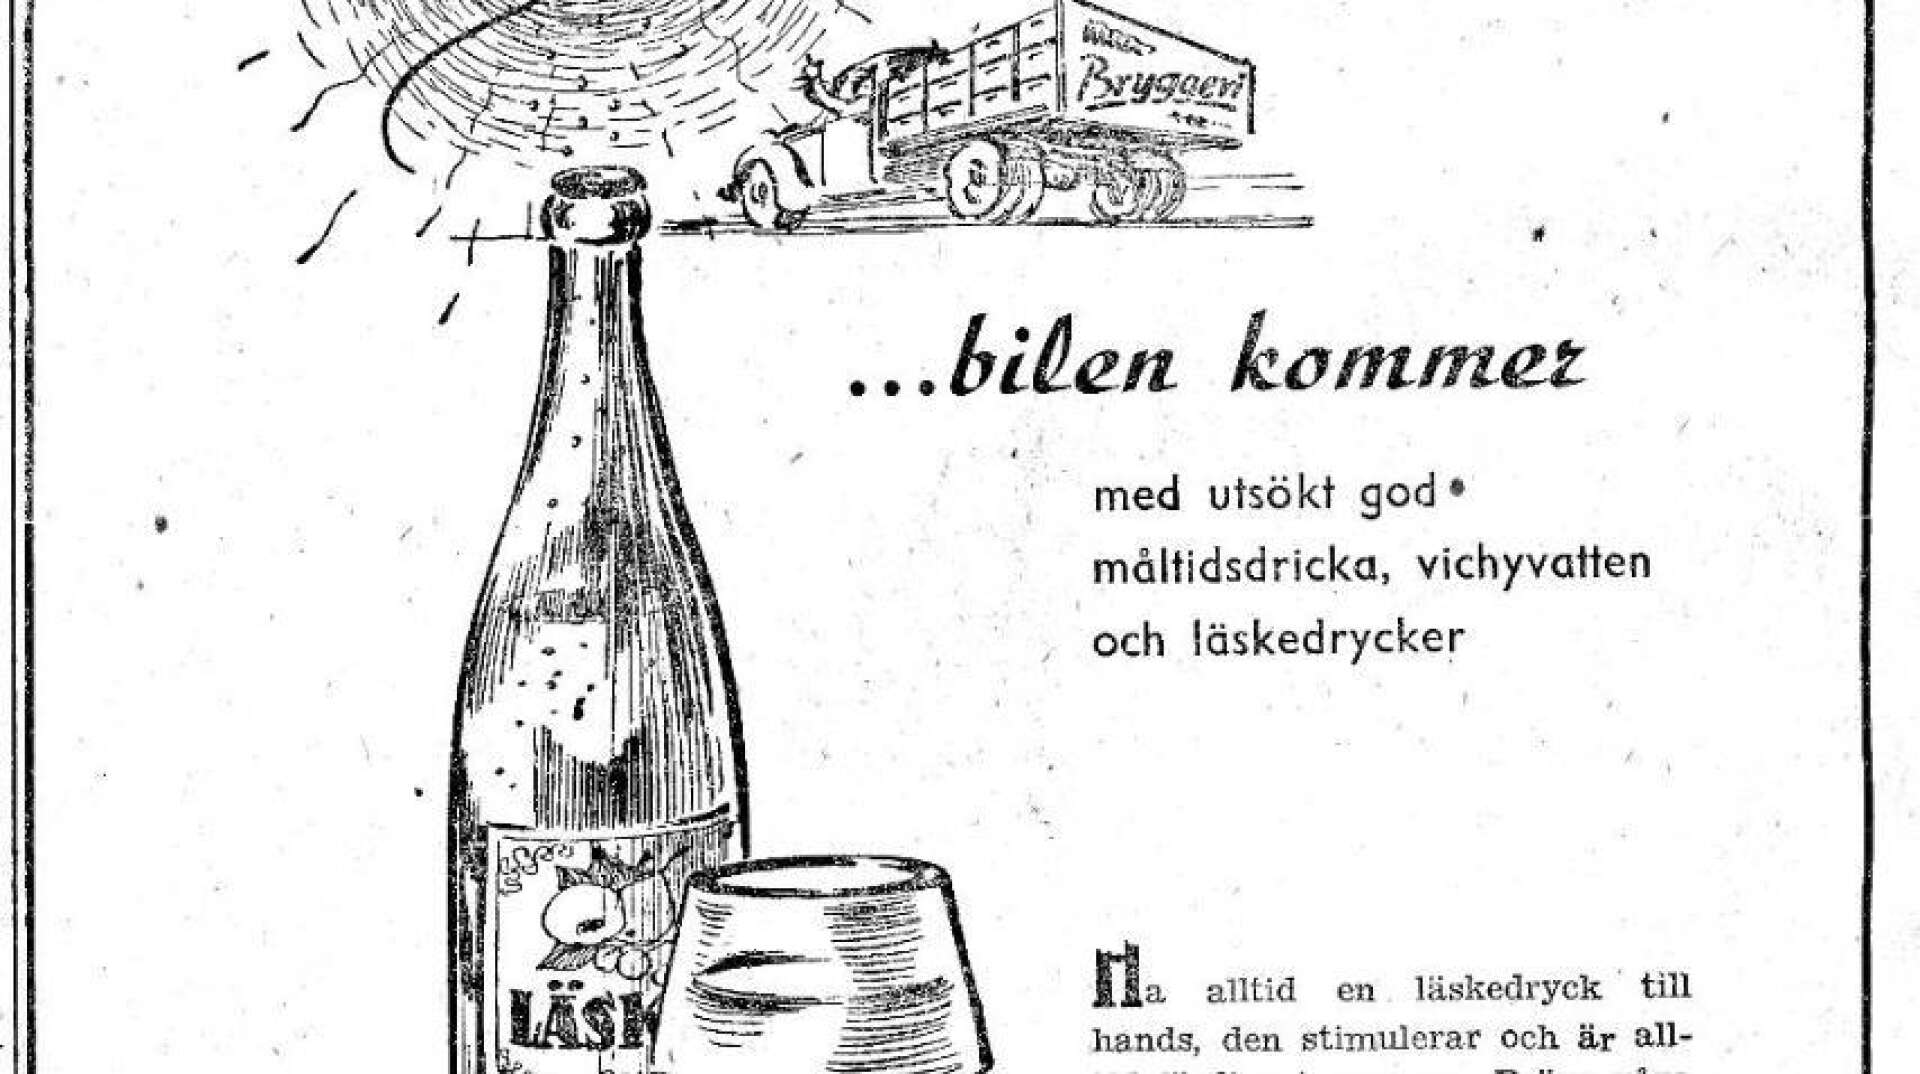 När Säffle skulle bli stad 1951 utkom Säffle-Tidningen med ett specialnummer. I detta fanns också en annons för Säffle Svagdricksbryggeri. Måltidsdricka, vichyvatten och läskedrycker kunde man få när bilen från bryggeriet kom.